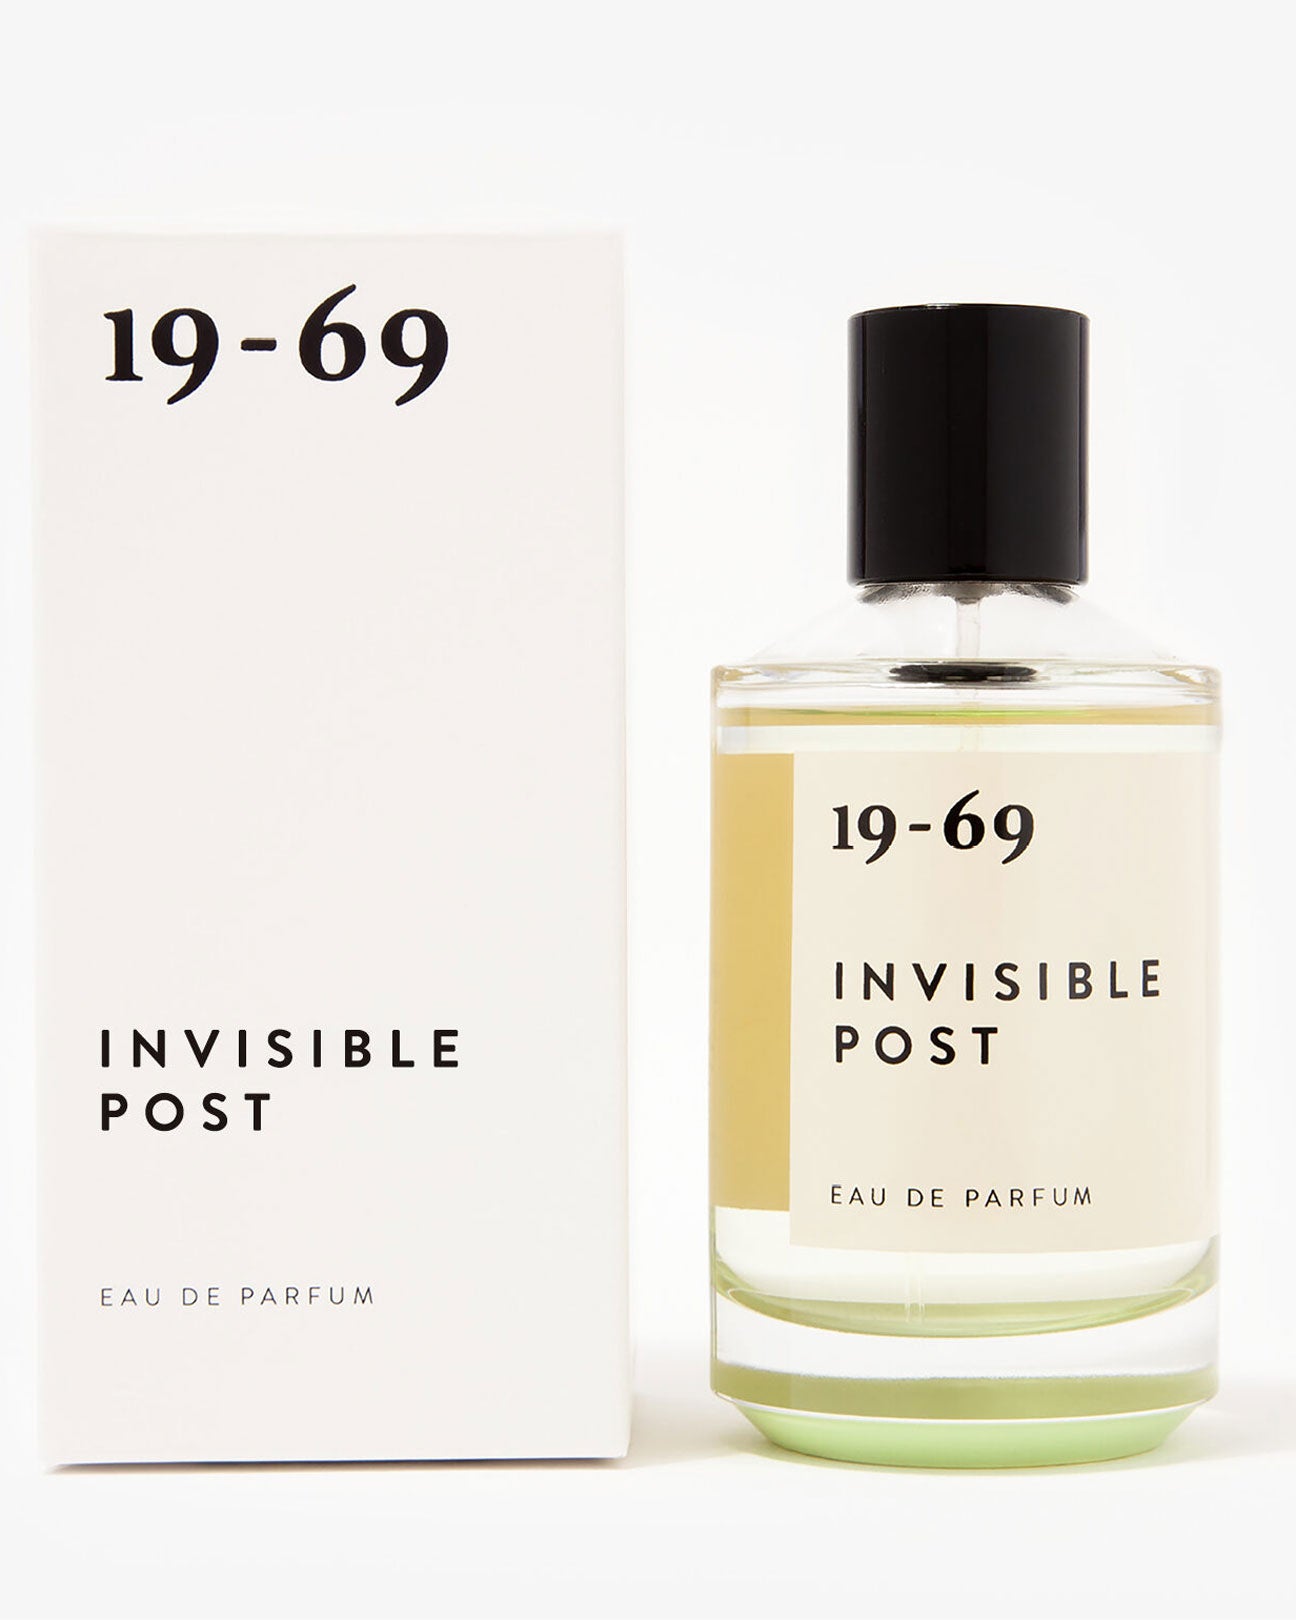 19-69 Eau De Parfum 30ml. in Invisible Post available at Lahn.shop